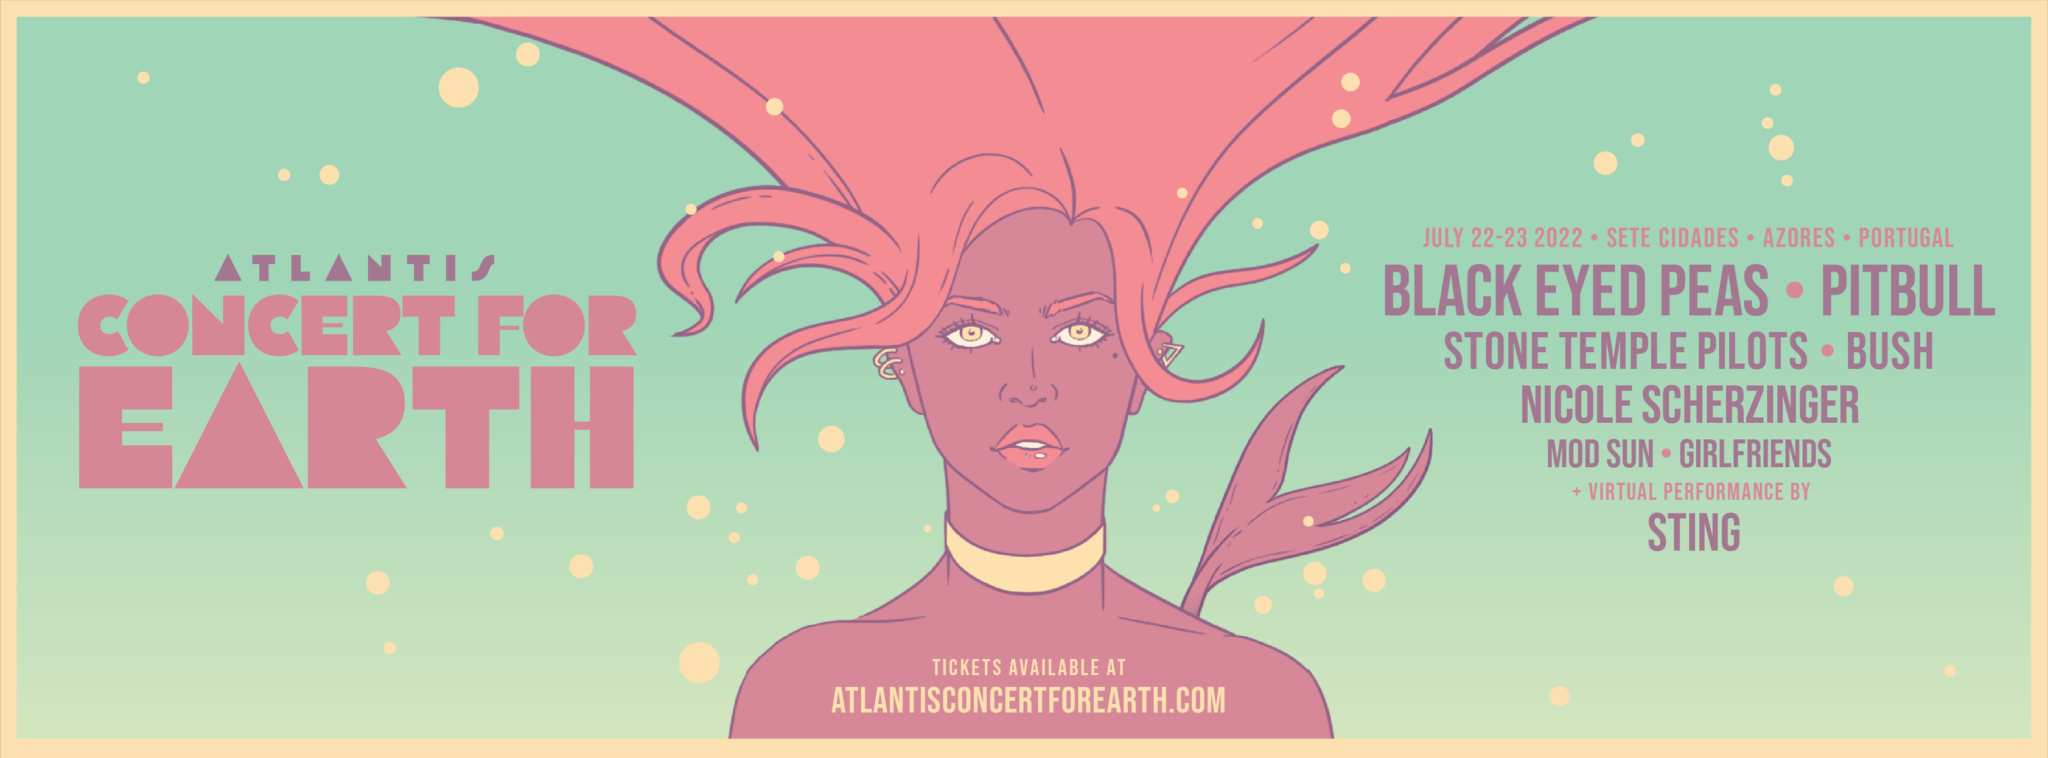 Atlantis Concert for Earth 2022 realizase nos Açores com os Black Eyed